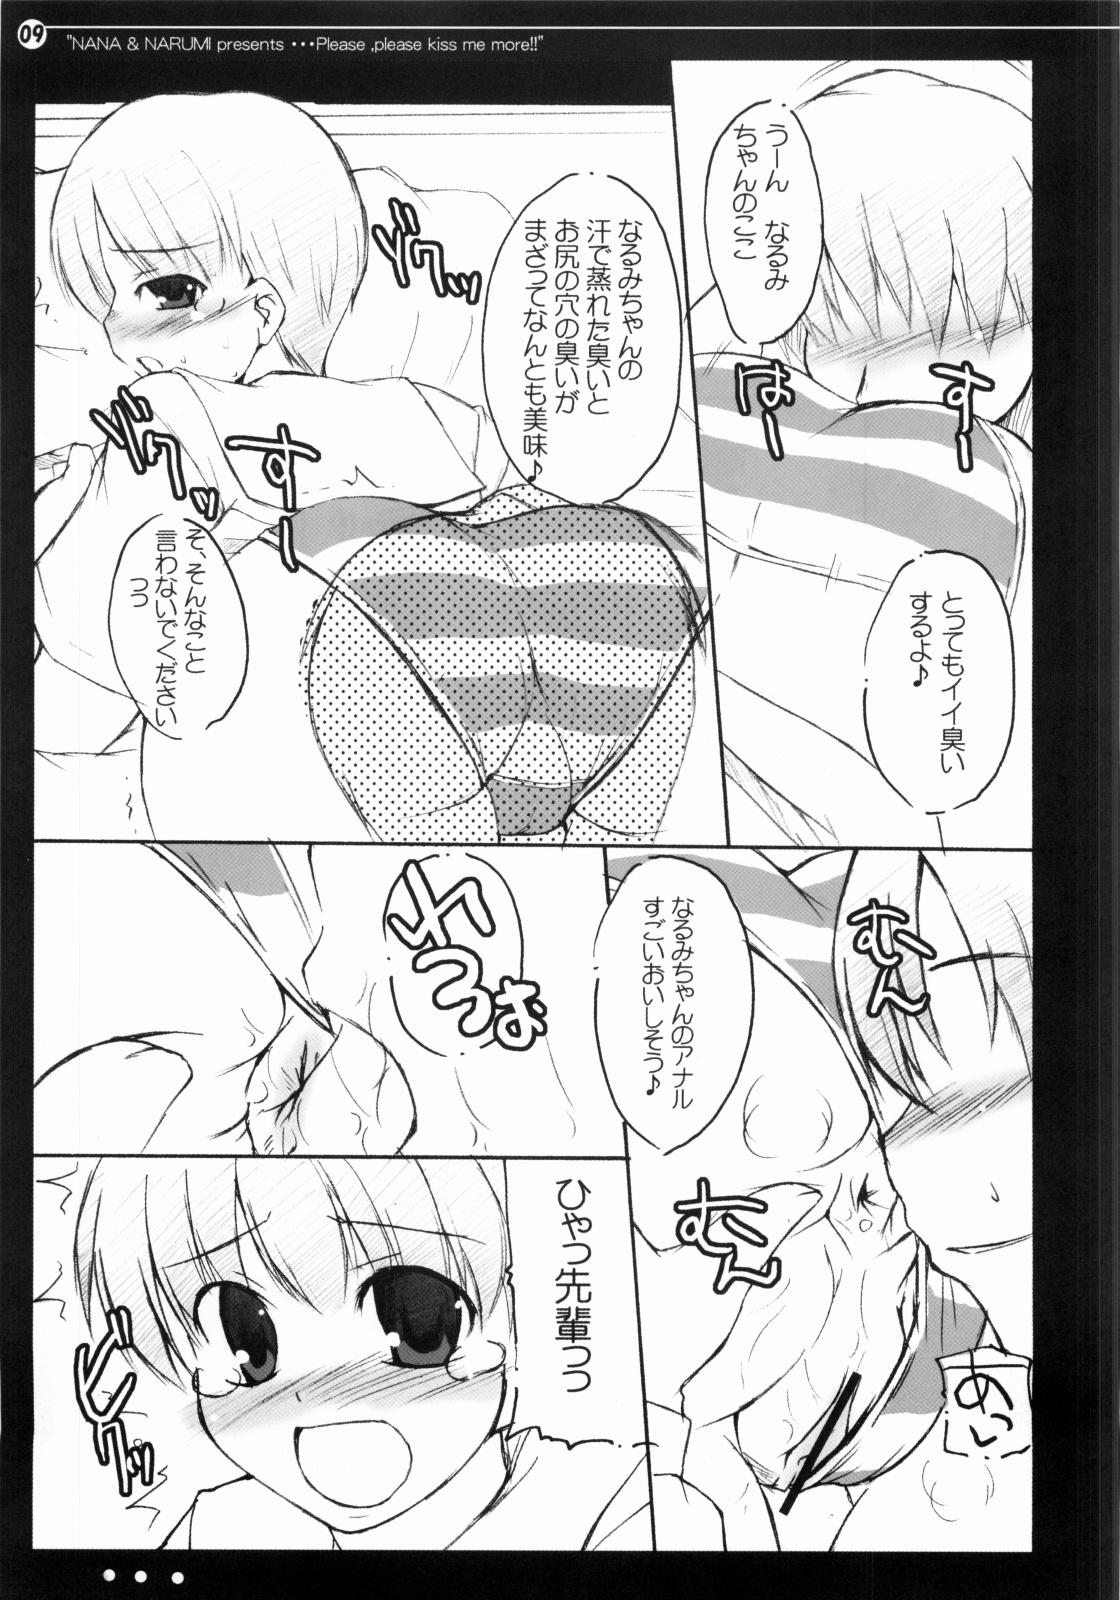 Caliente Nana to Narumi no Motto Kisu Shite!! - Kimikiss Van - Page 8